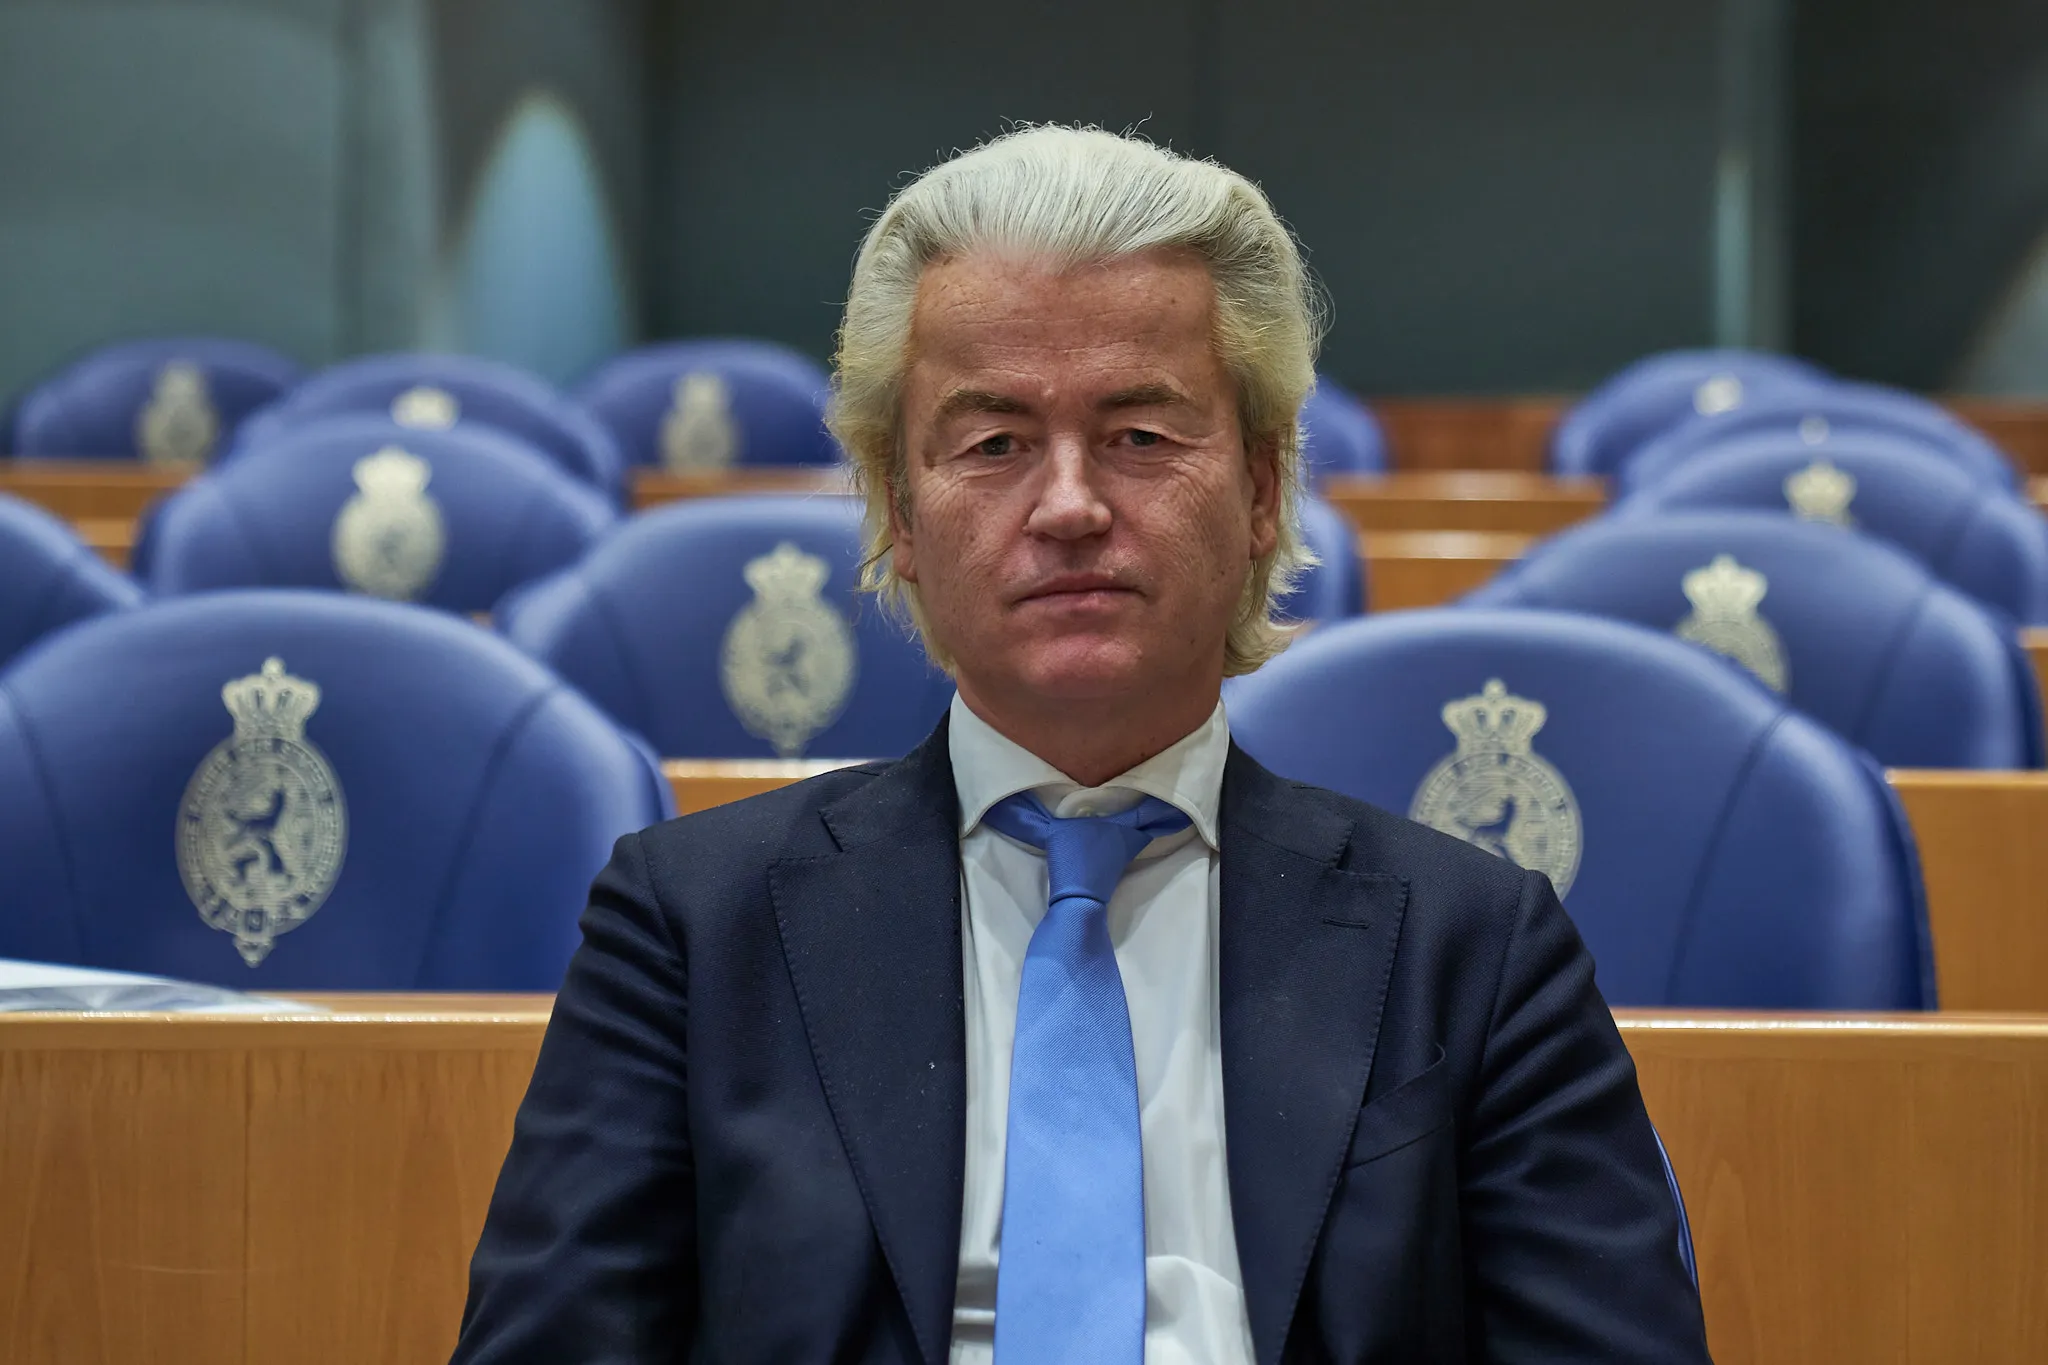 20220125 Tweede Kamer Geert Wilders PVV